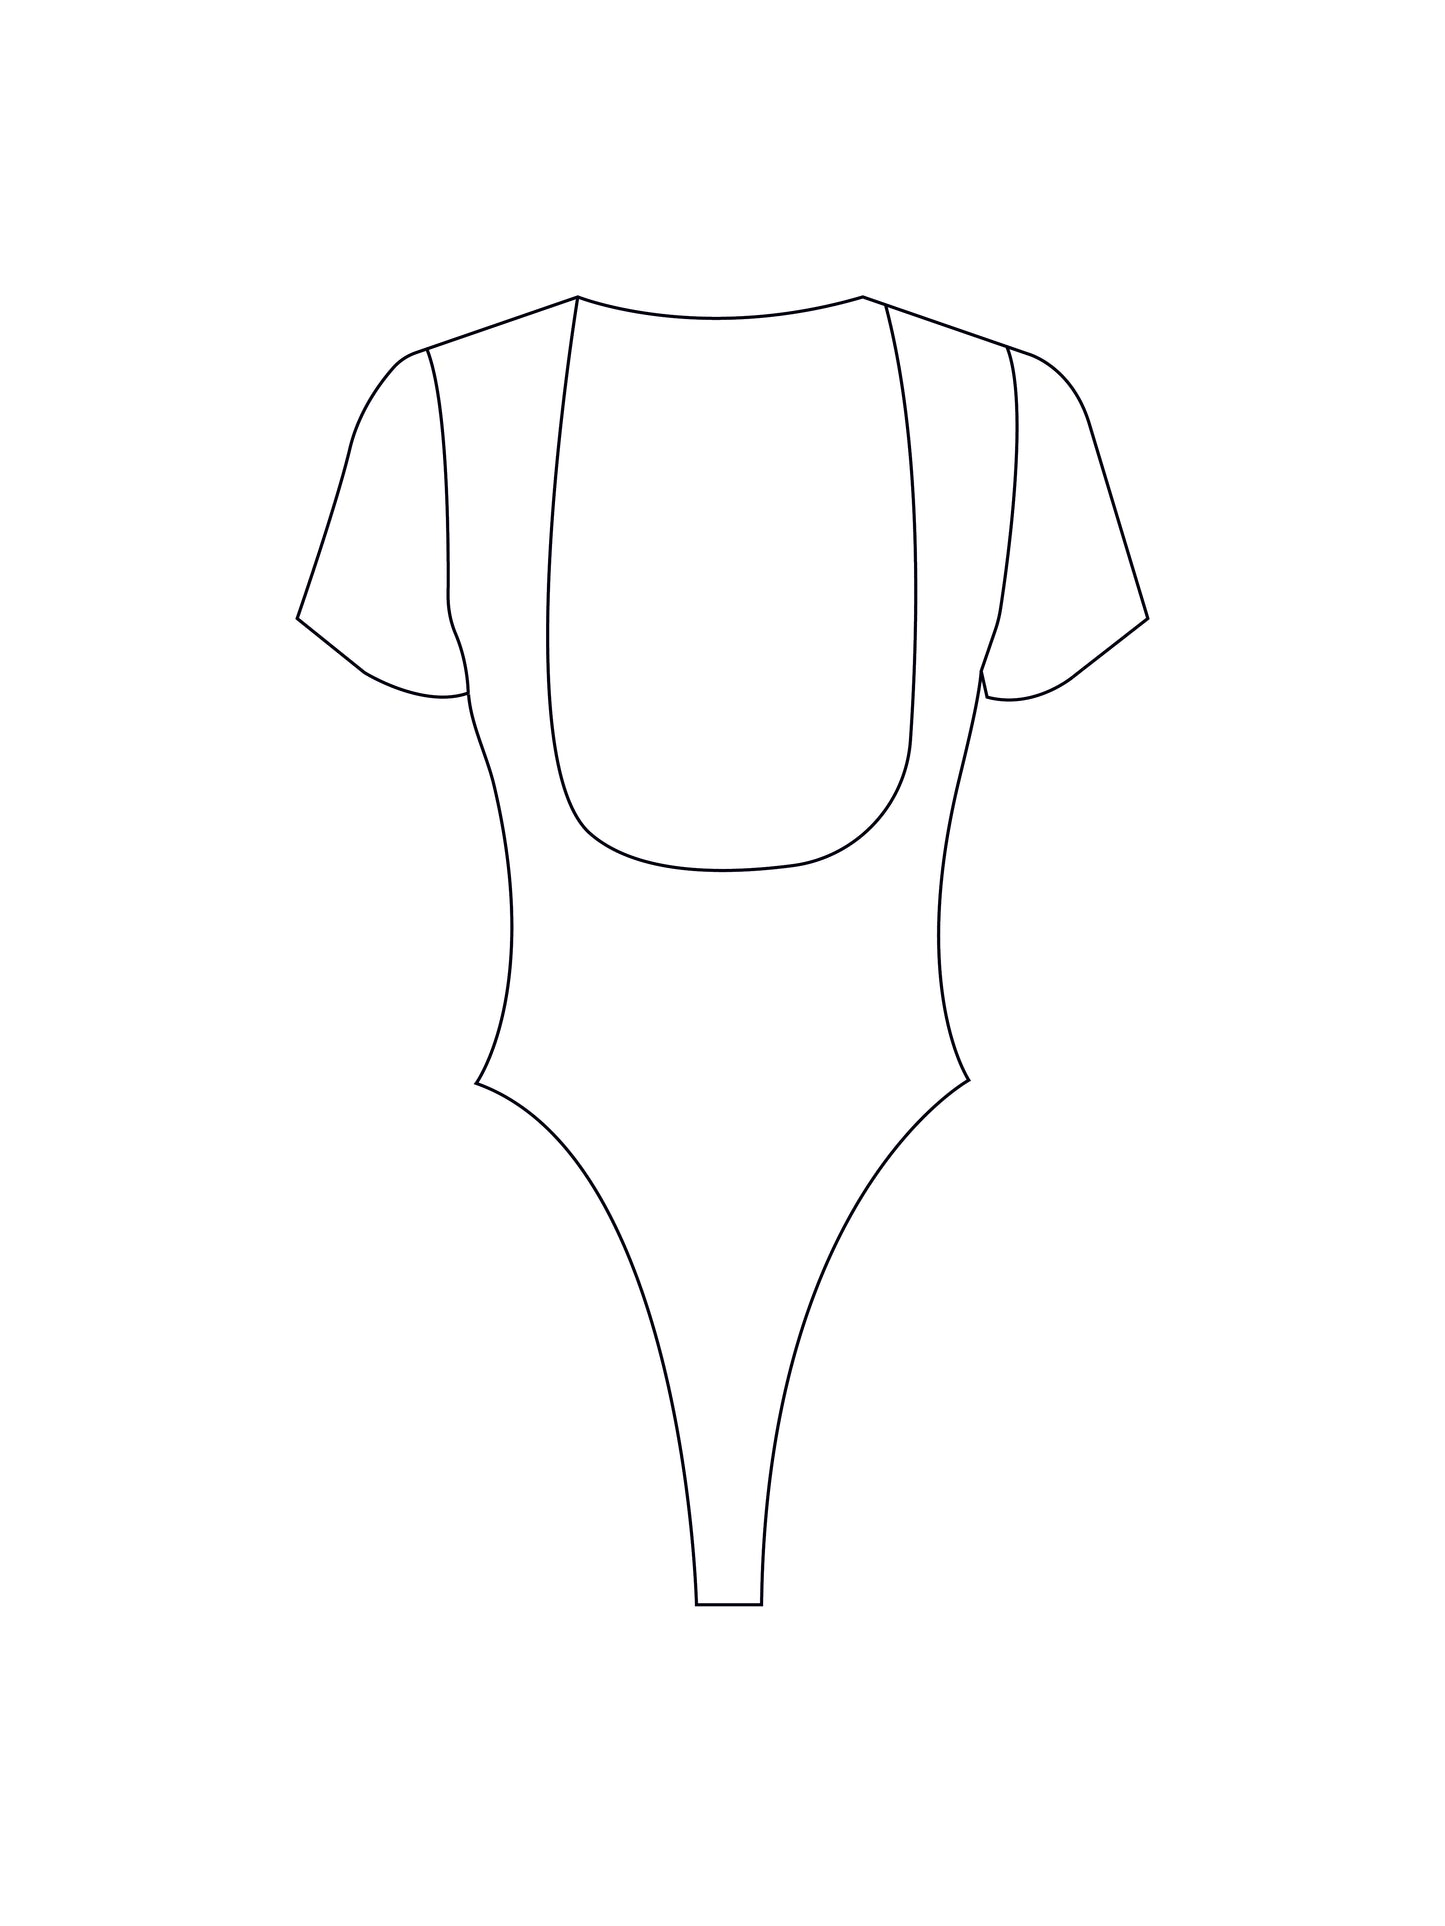 Custom tee bodysuit/swimsuit